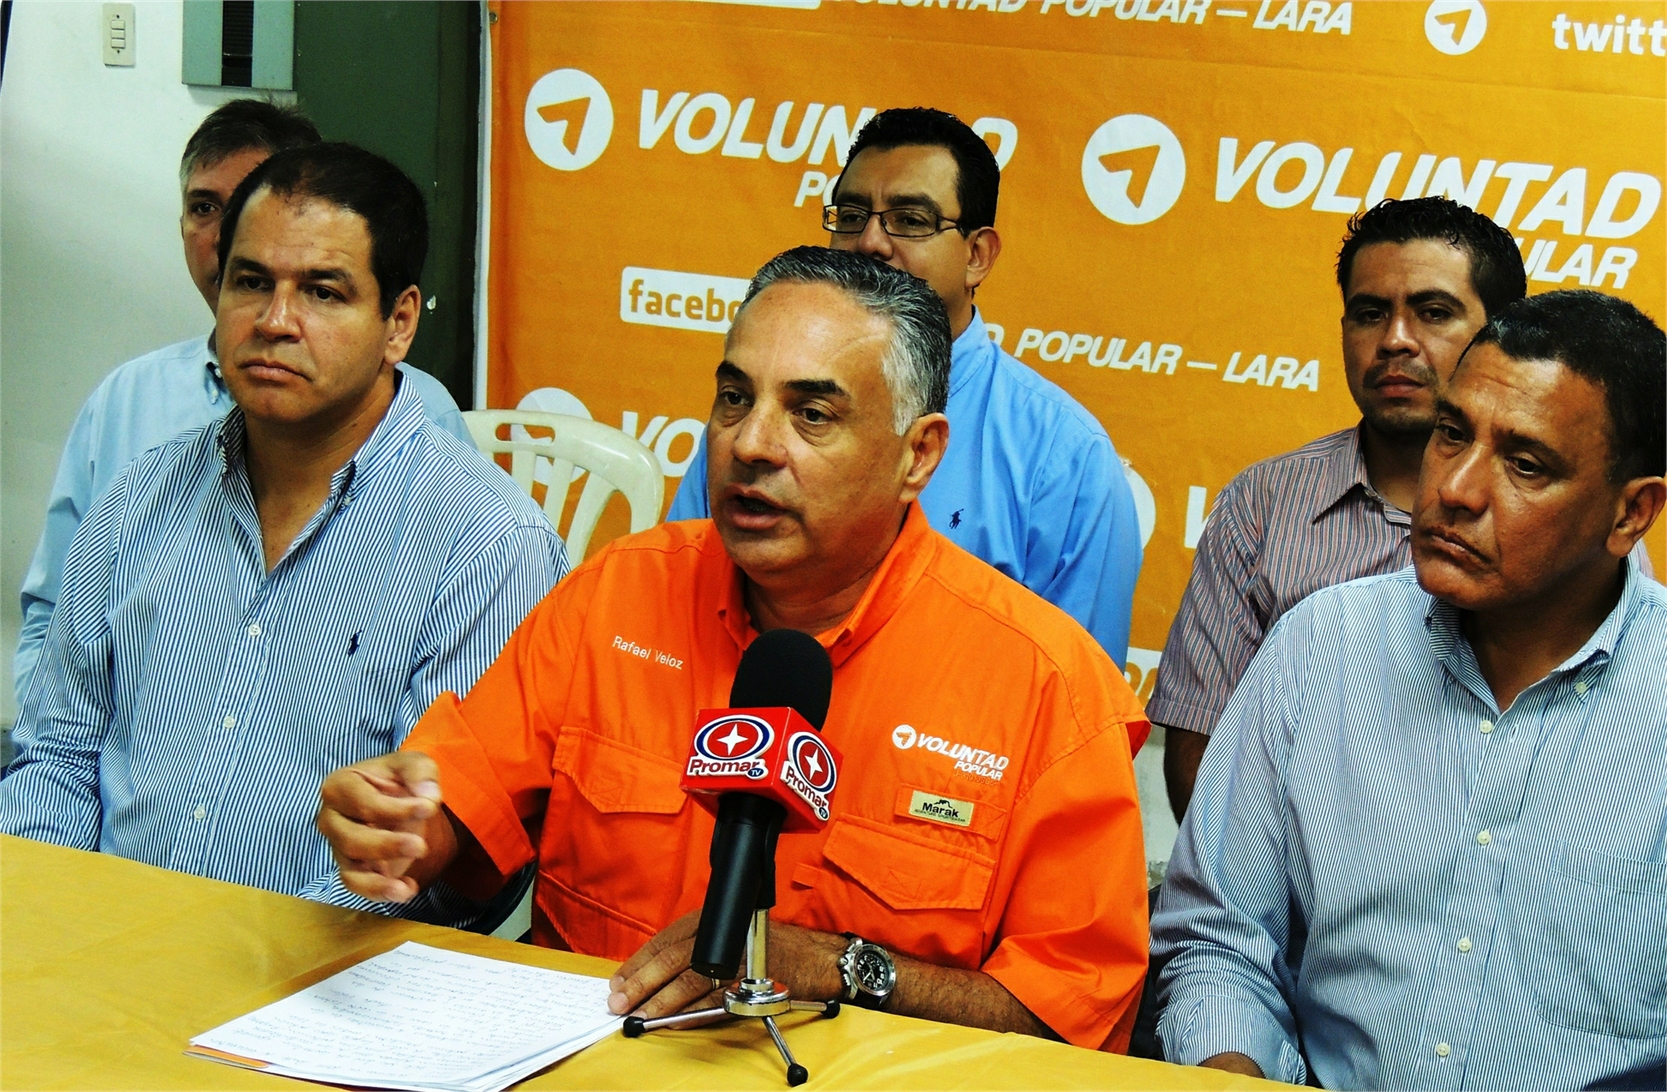 Rafael Veloz: El 16 de julio será un día clave para el cambio que se espera para Venezuela